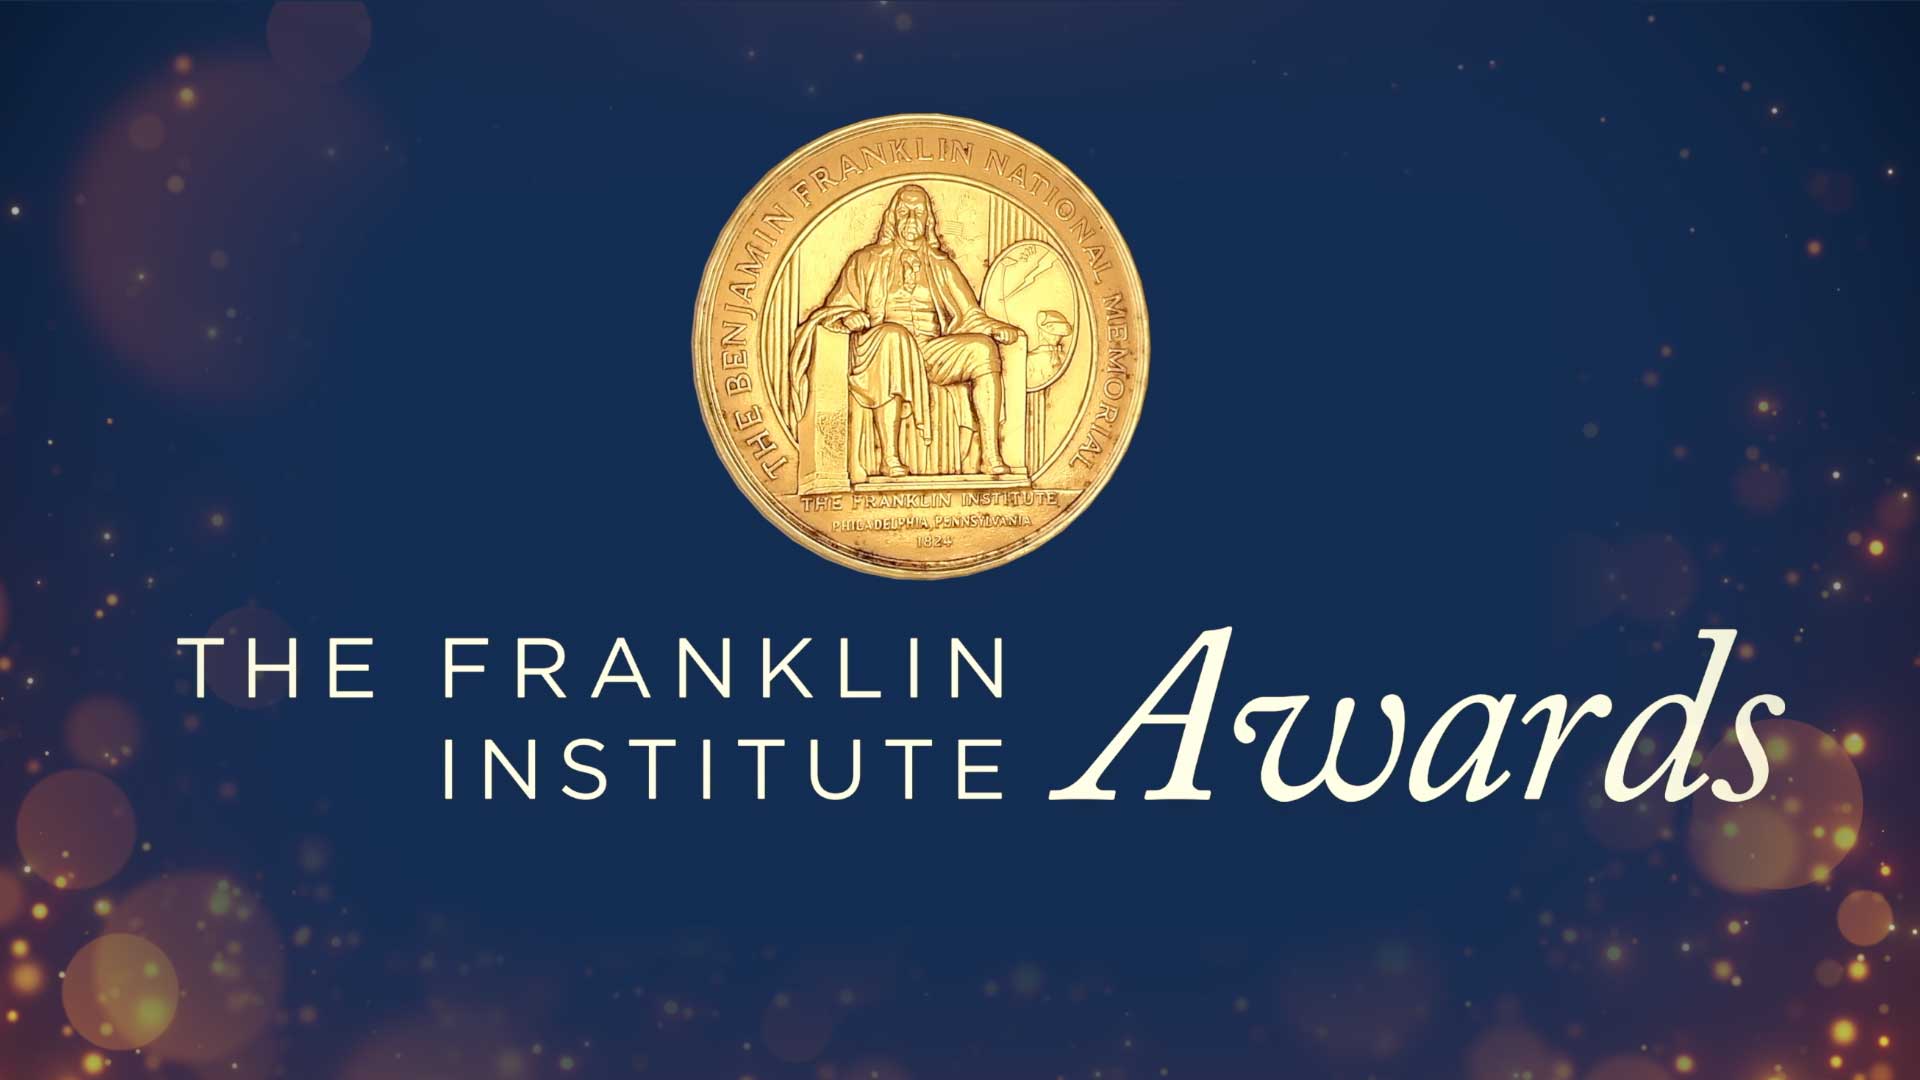 The Franklin Institute Awards logo and gold medal depicting Benjamin Franklin